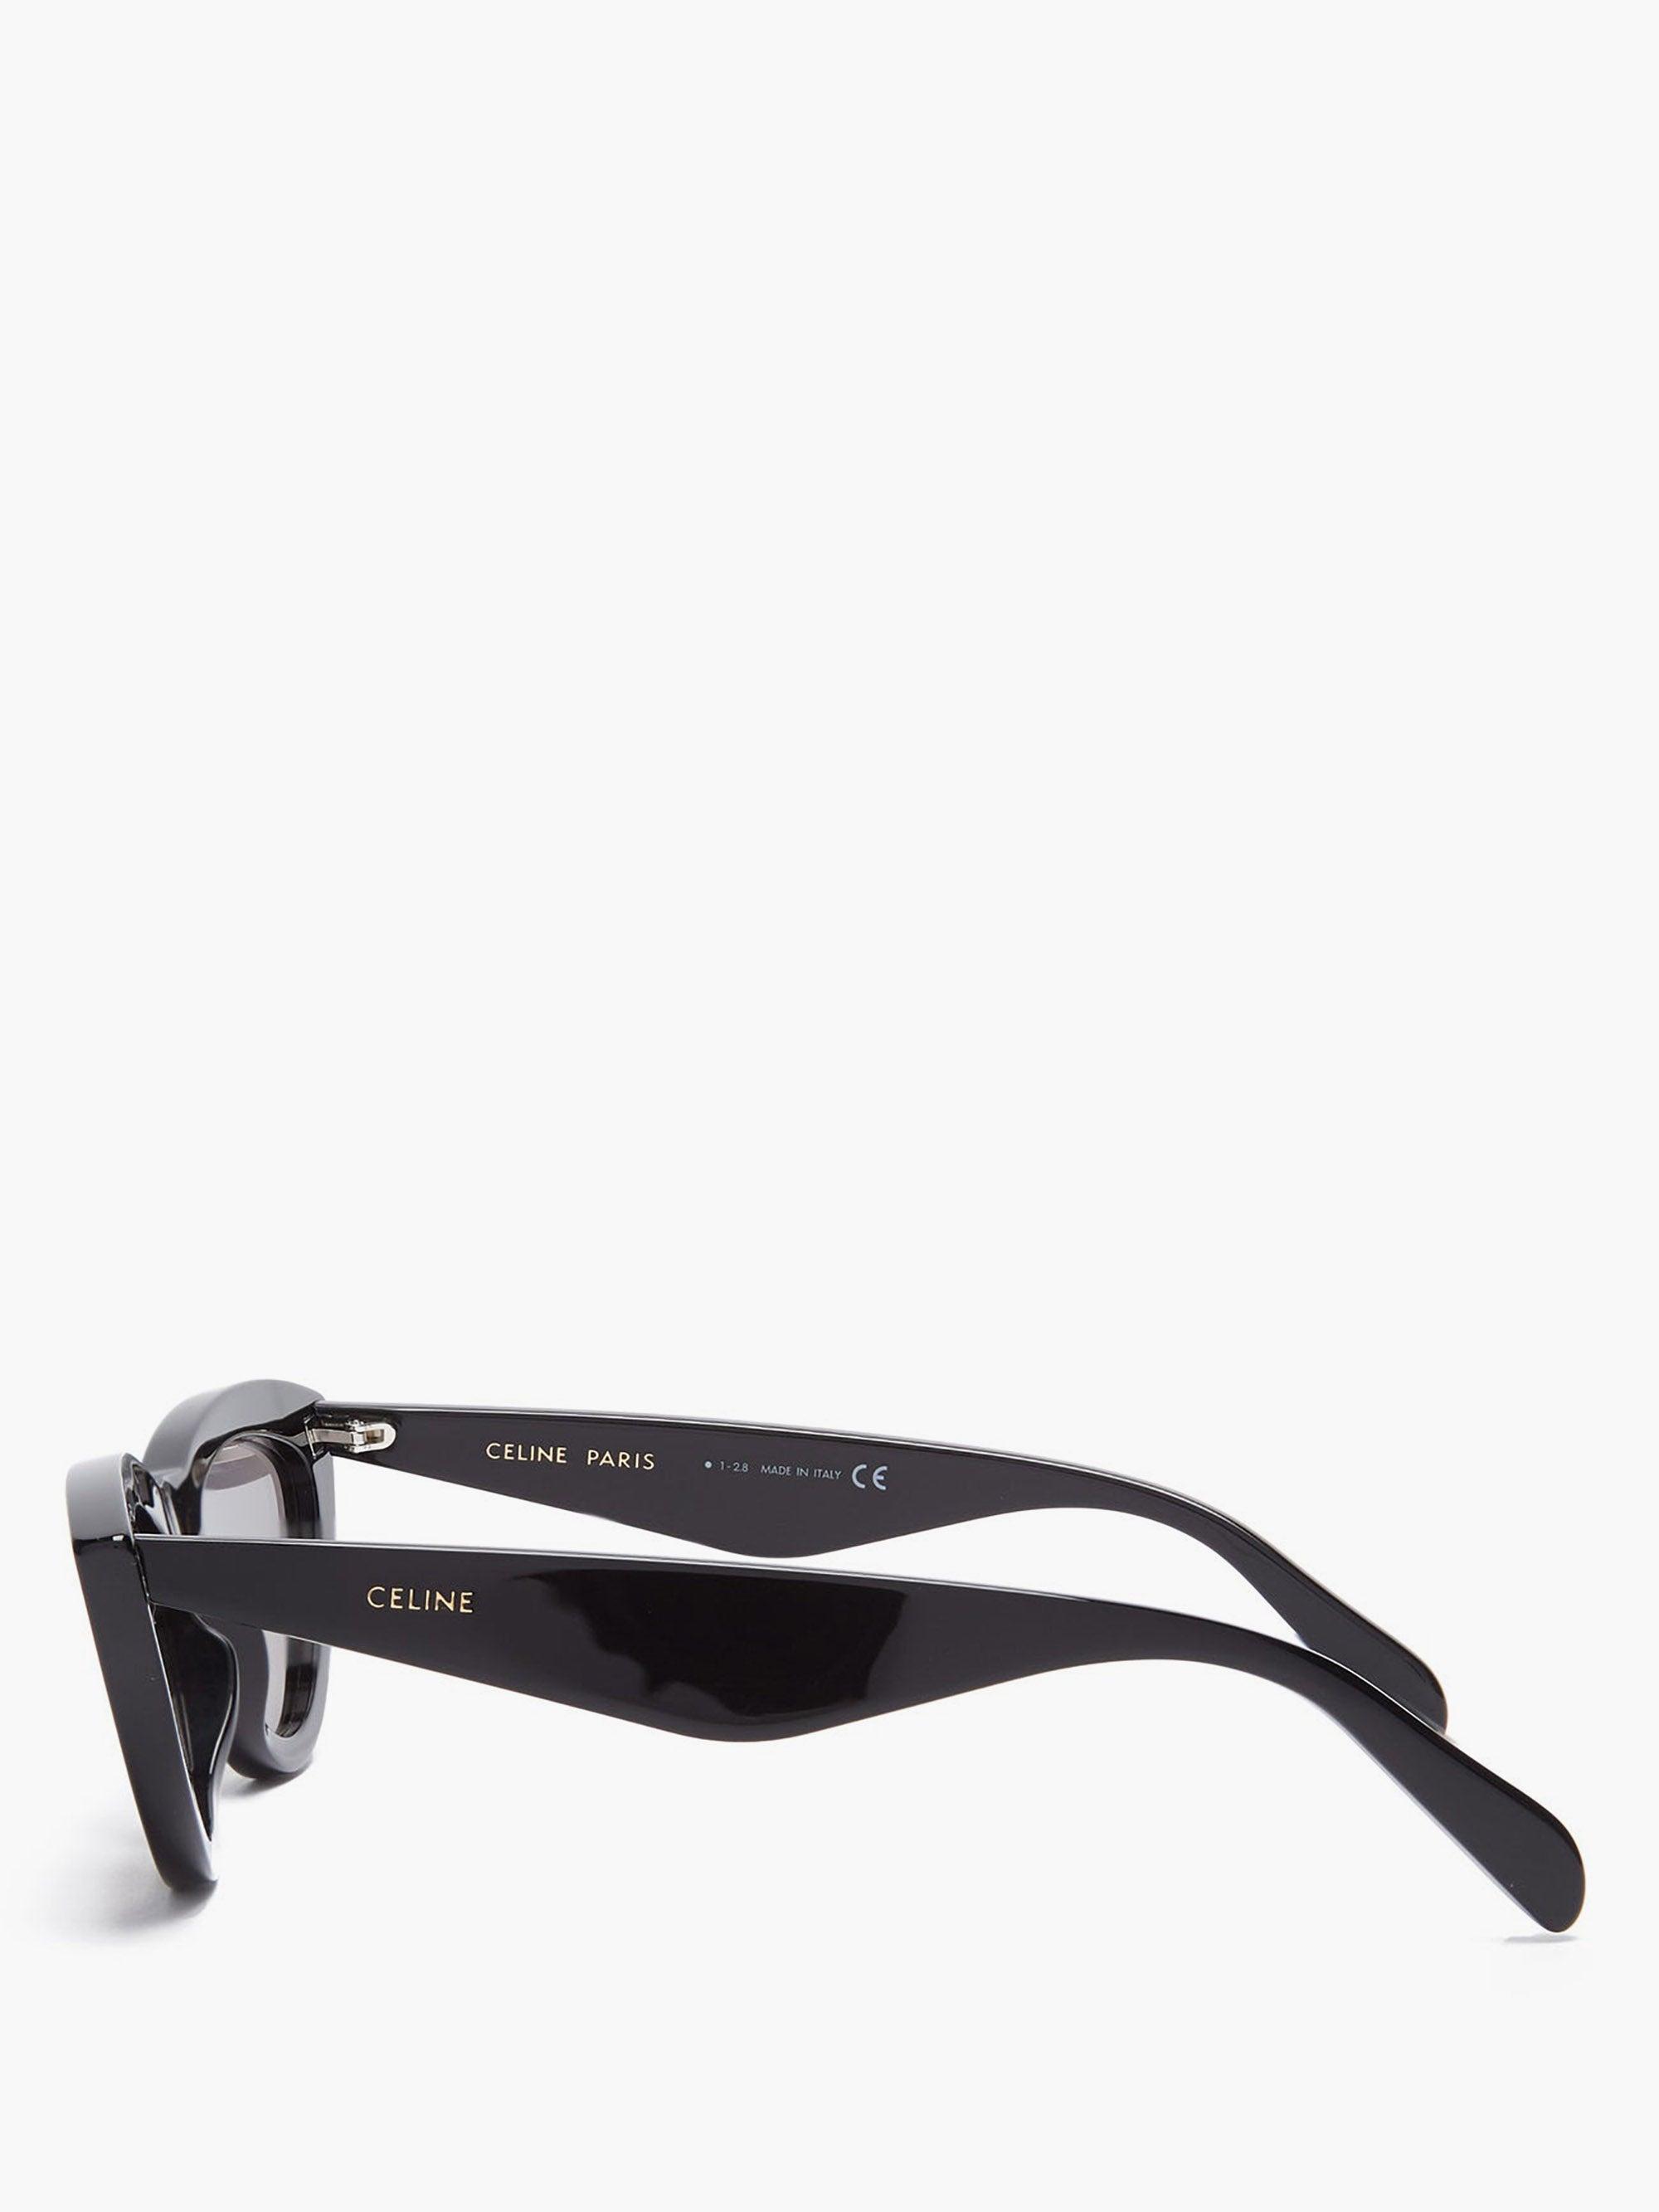 Celine Cat-eye Sunglasses in Shiny Black/Smoke (Black) - Save 31 ...